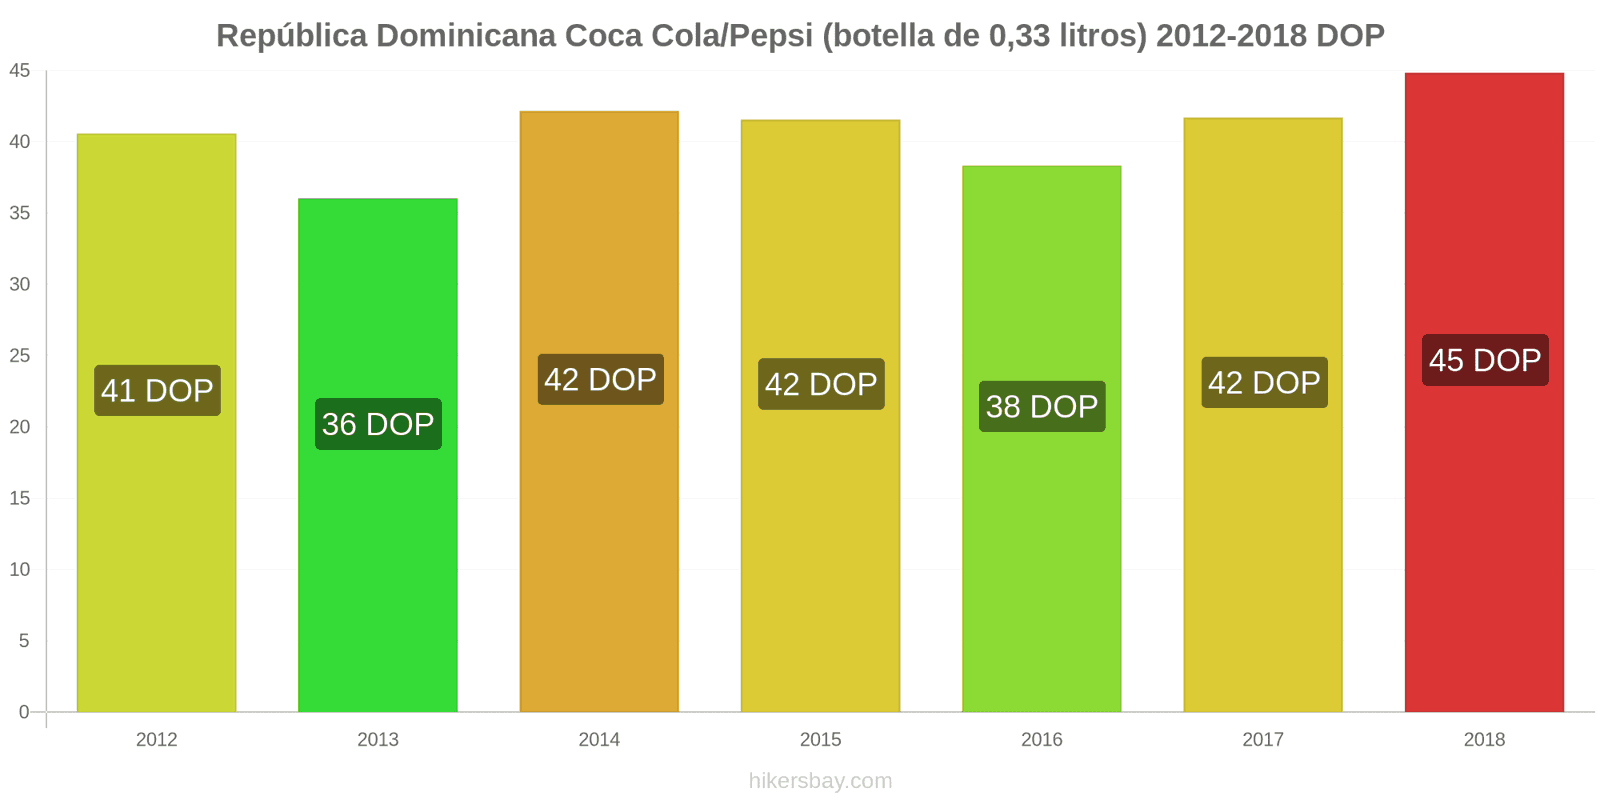 República Dominicana cambios de precios Coca-Cola/Pepsi (botella de 0.33 litros) hikersbay.com